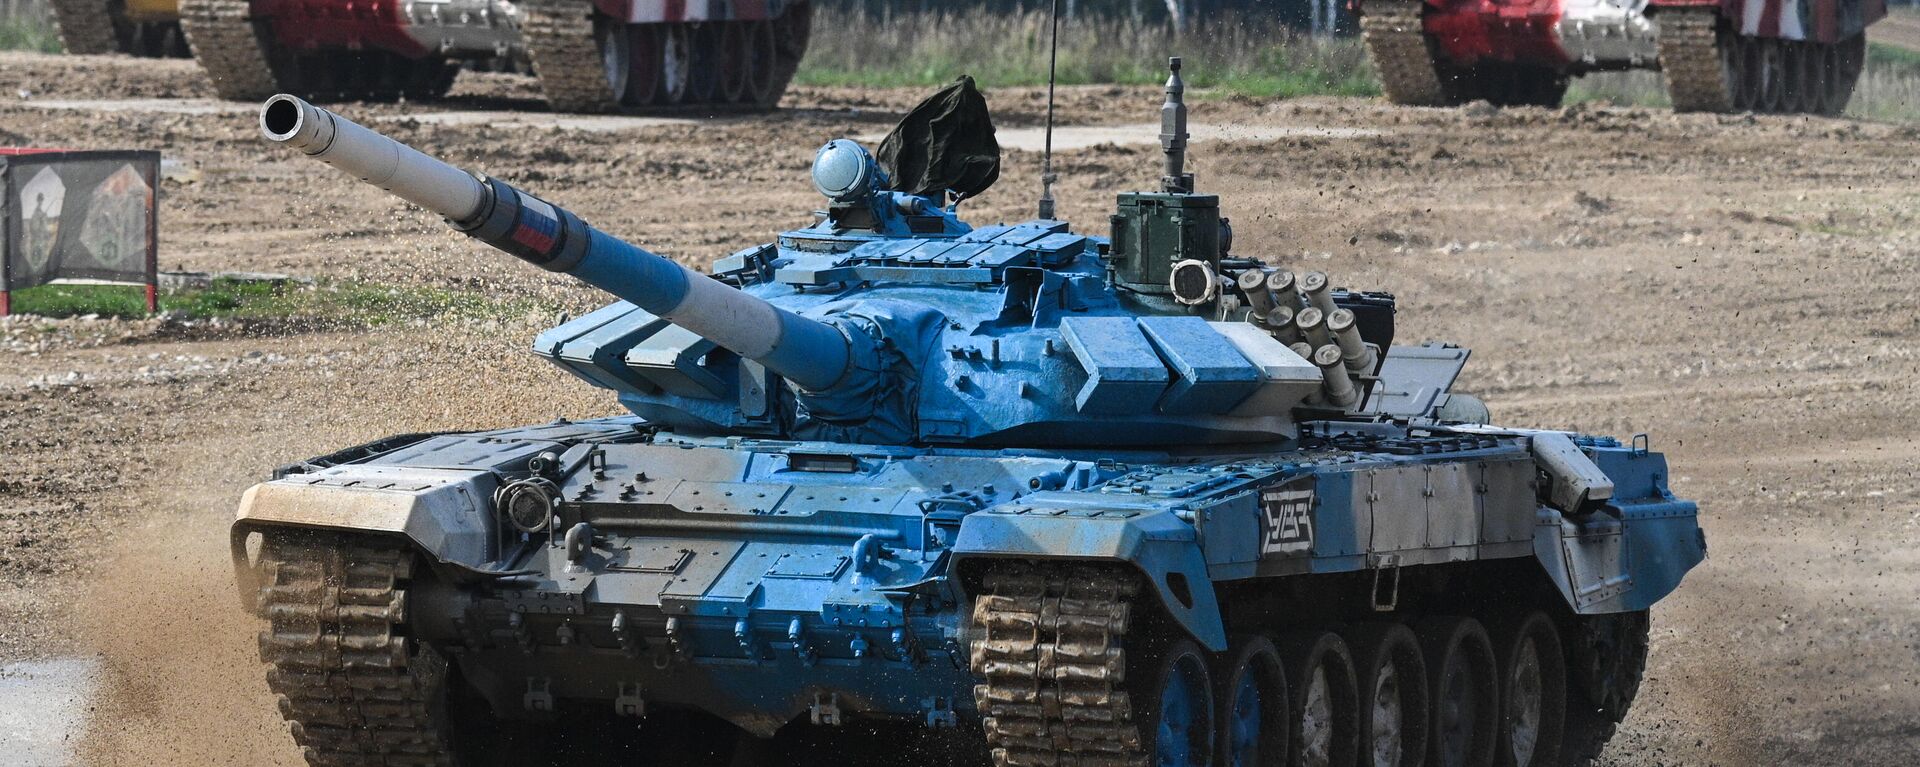 Тенк Т-72Б3 руске екипе на Међународним војним играма 2021. - Sputnik Србија, 1920, 04.09.2021